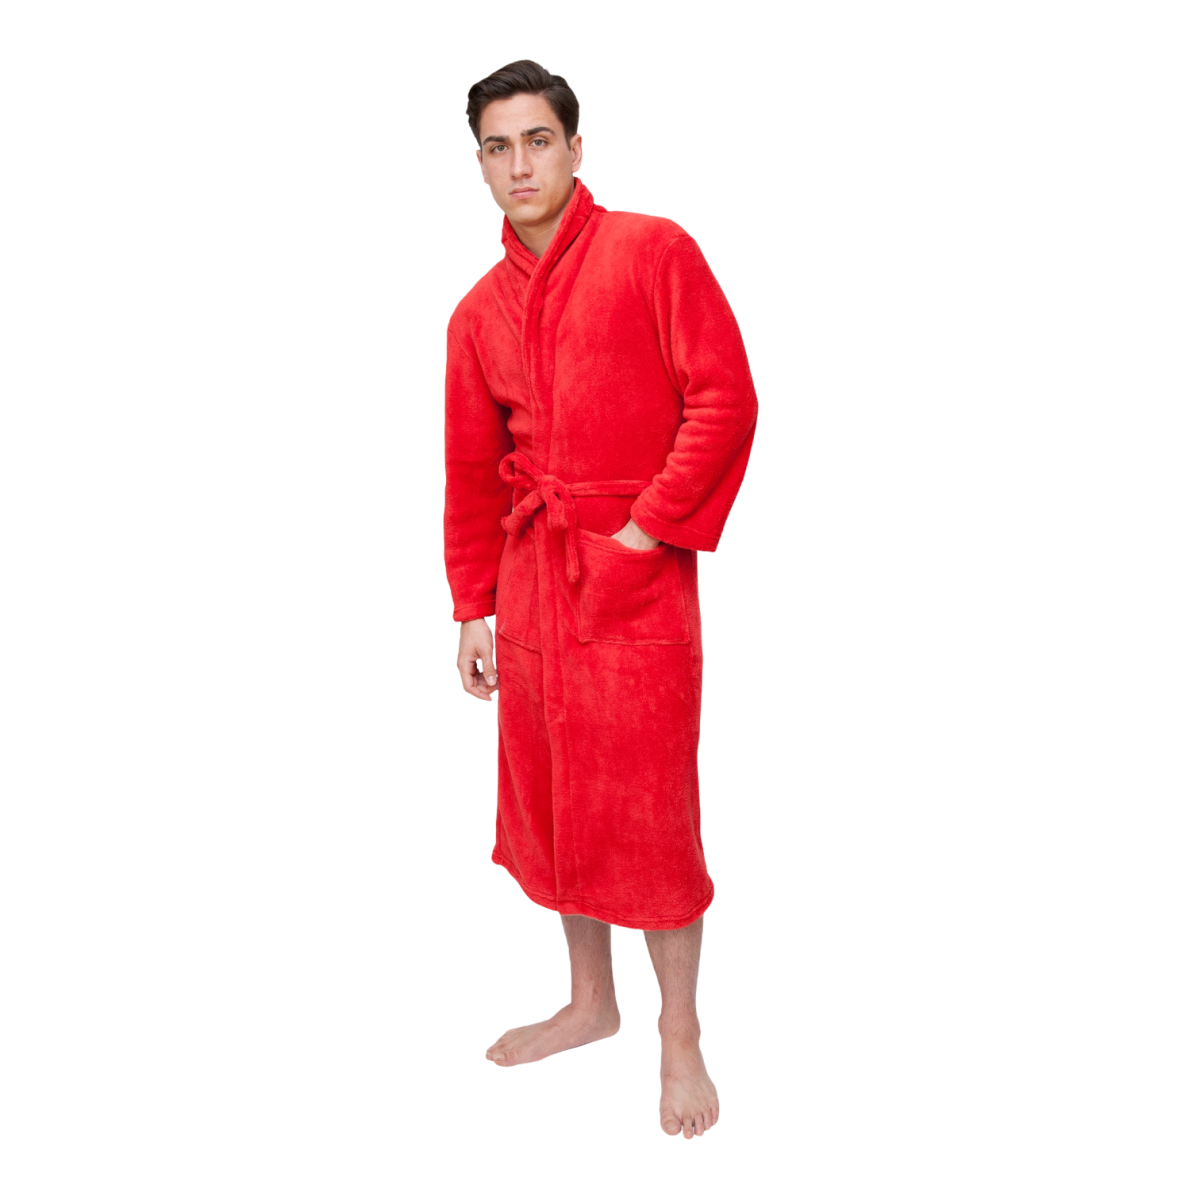 Robes for Groomsmen